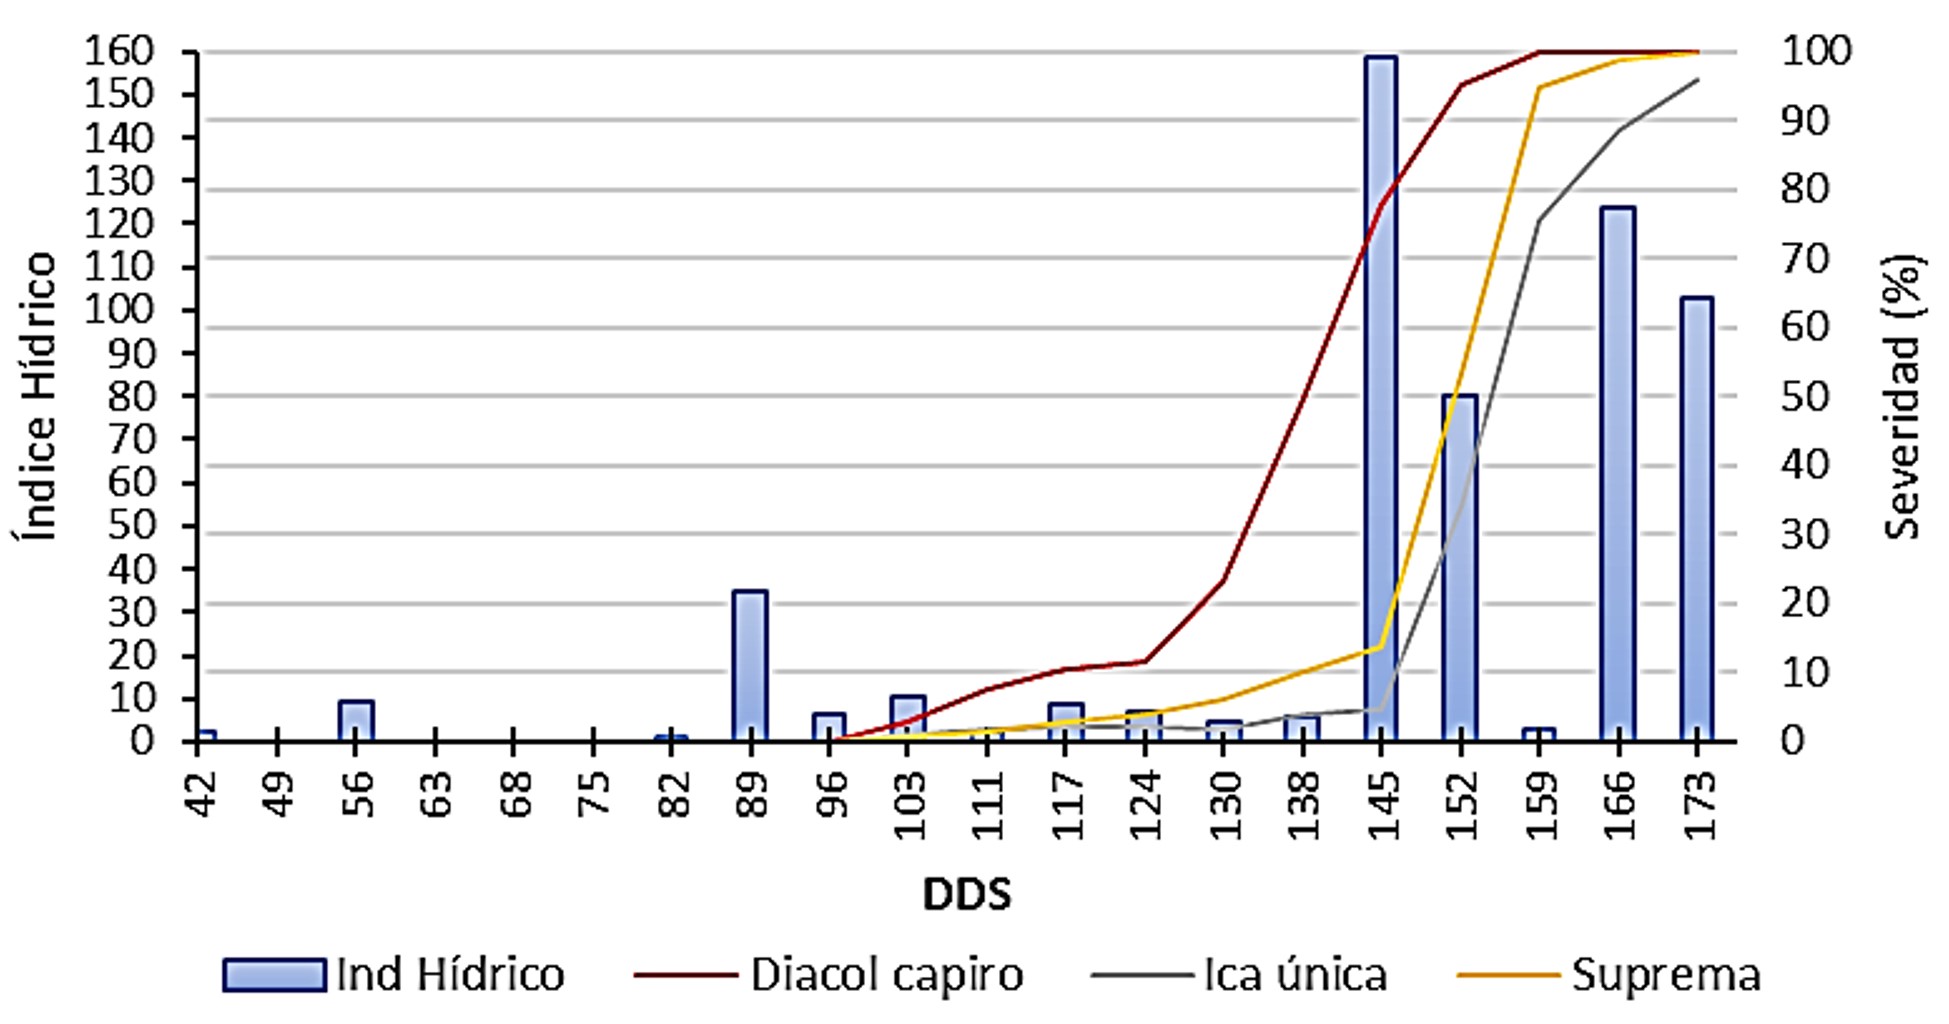 Relación de la severidad del tizón tardío (P. infestans) y la velocidad del viento en tres variedades de papa durante los meses de diciembre 2015 a mayo 2016 en un ciclo de cultivo (173 días después de siembra - dds).